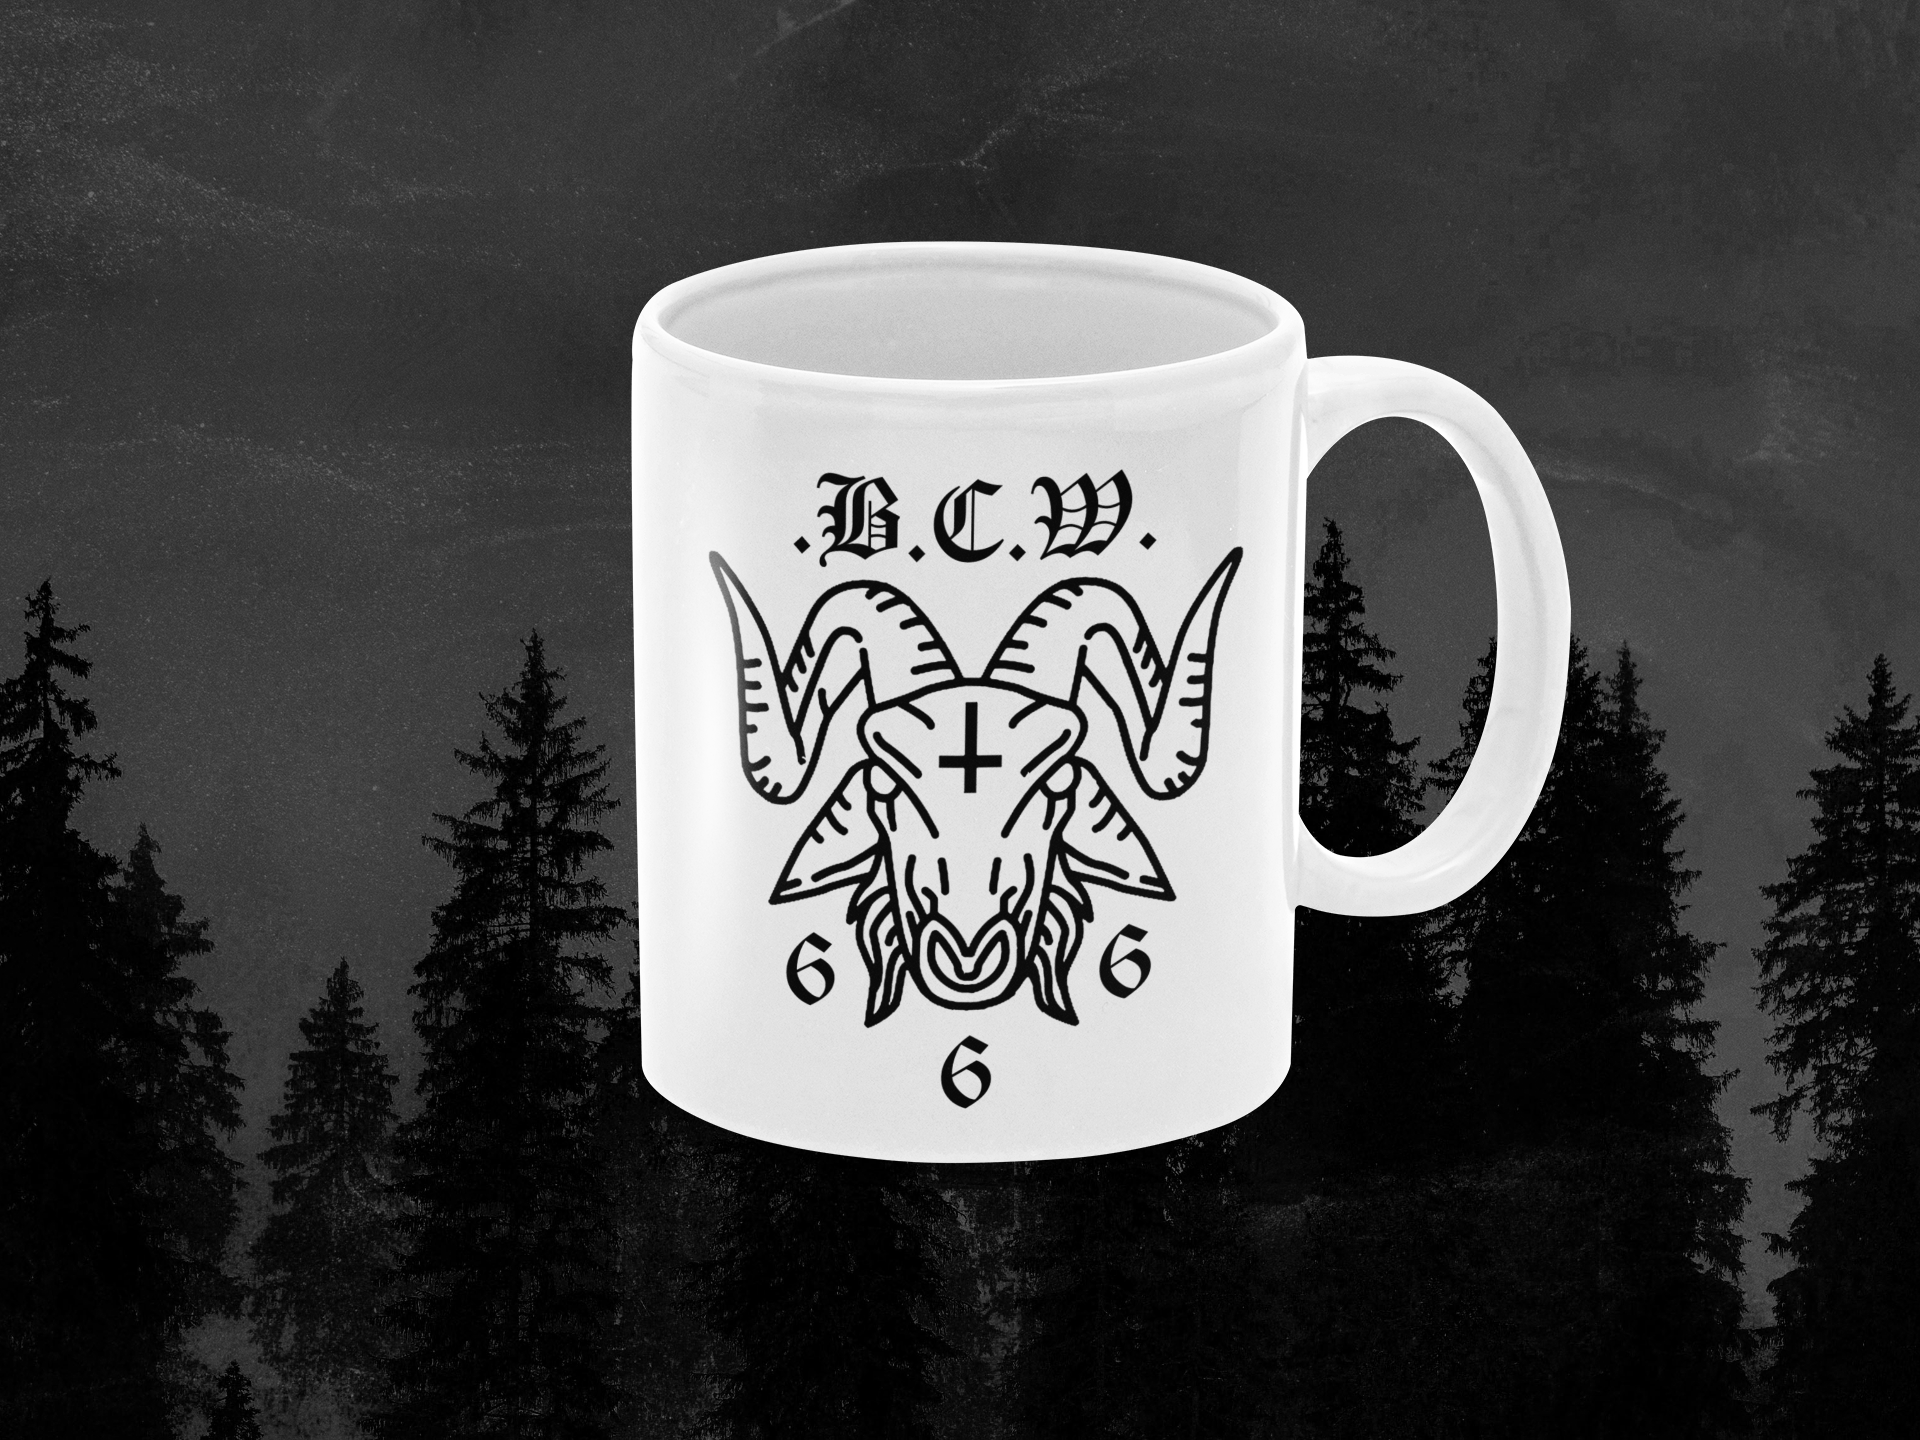 the bcw goat mug